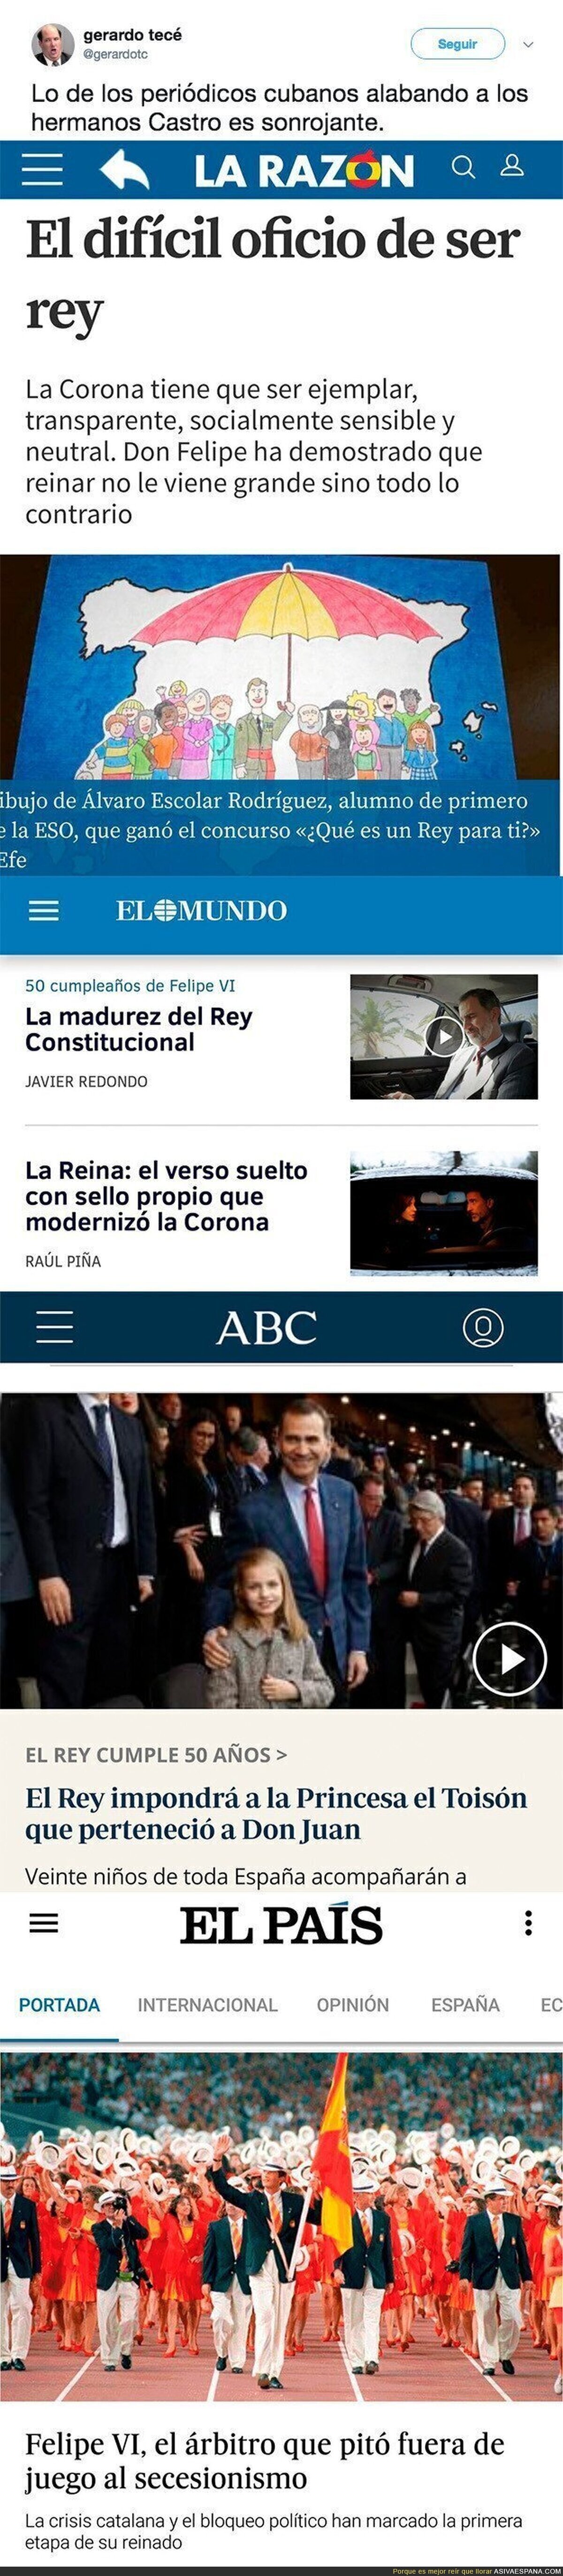 La prensa española vendida a la familia Real